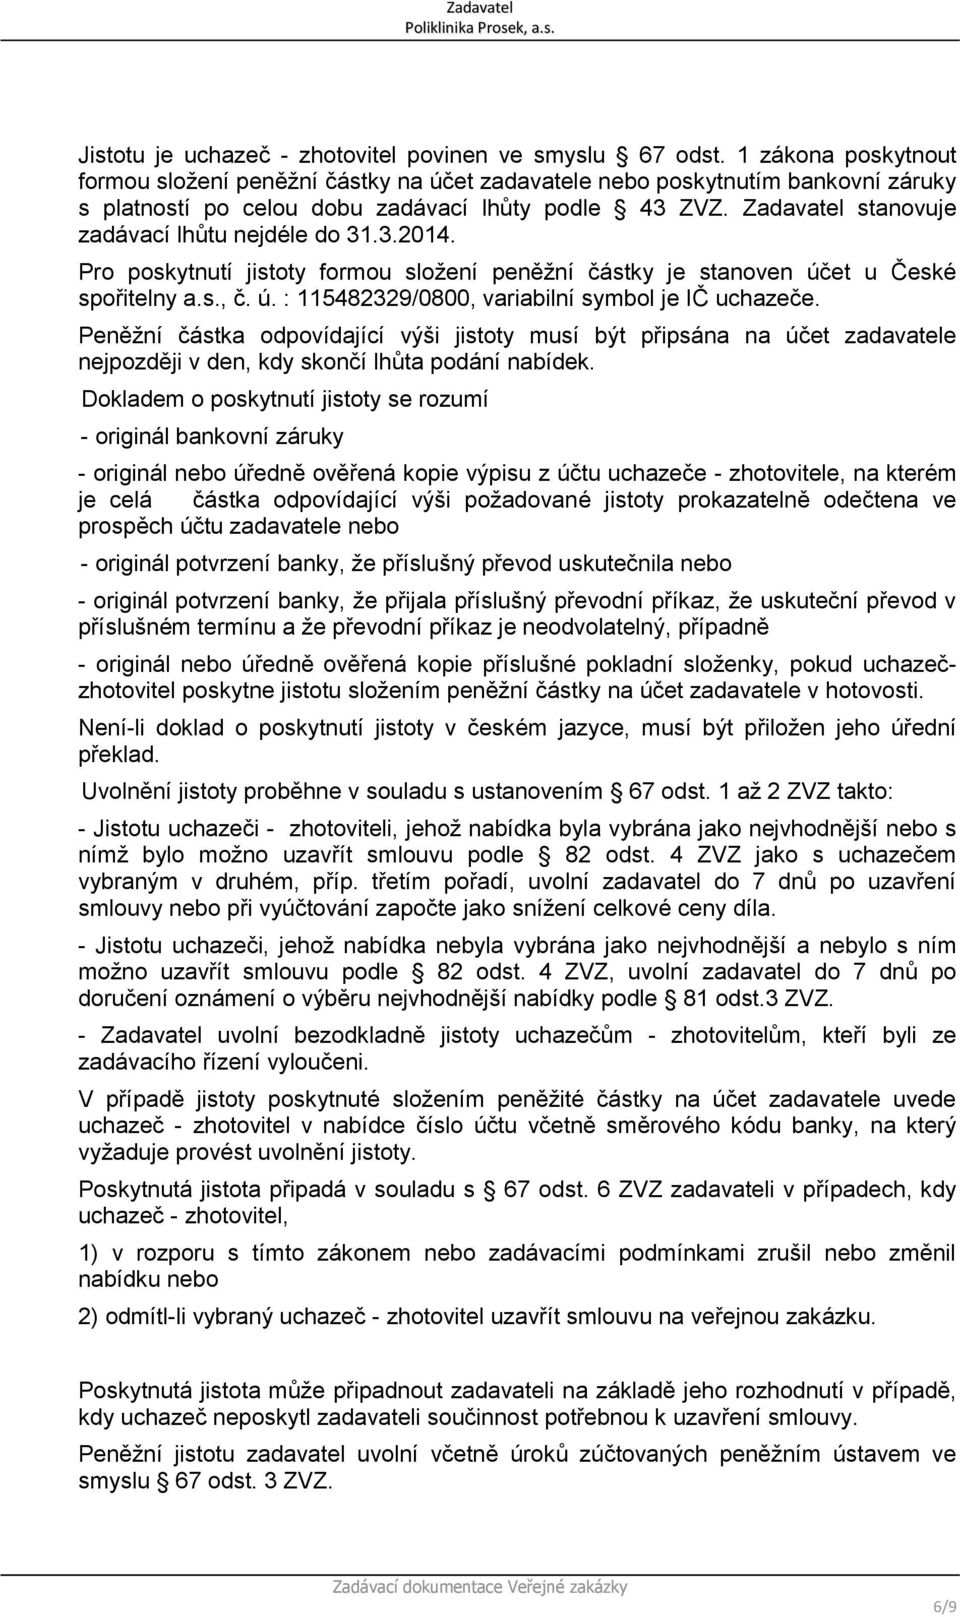 Zadavatel stanovuje zadávací lhůtu nejdéle do 31.3.2014. Pro poskytnutí jistoty formou složení peněžní částky je stanoven účet u České spořitelny a.s., č. ú. : 115482329/0800, variabilní symbol je IČ uchazeče.